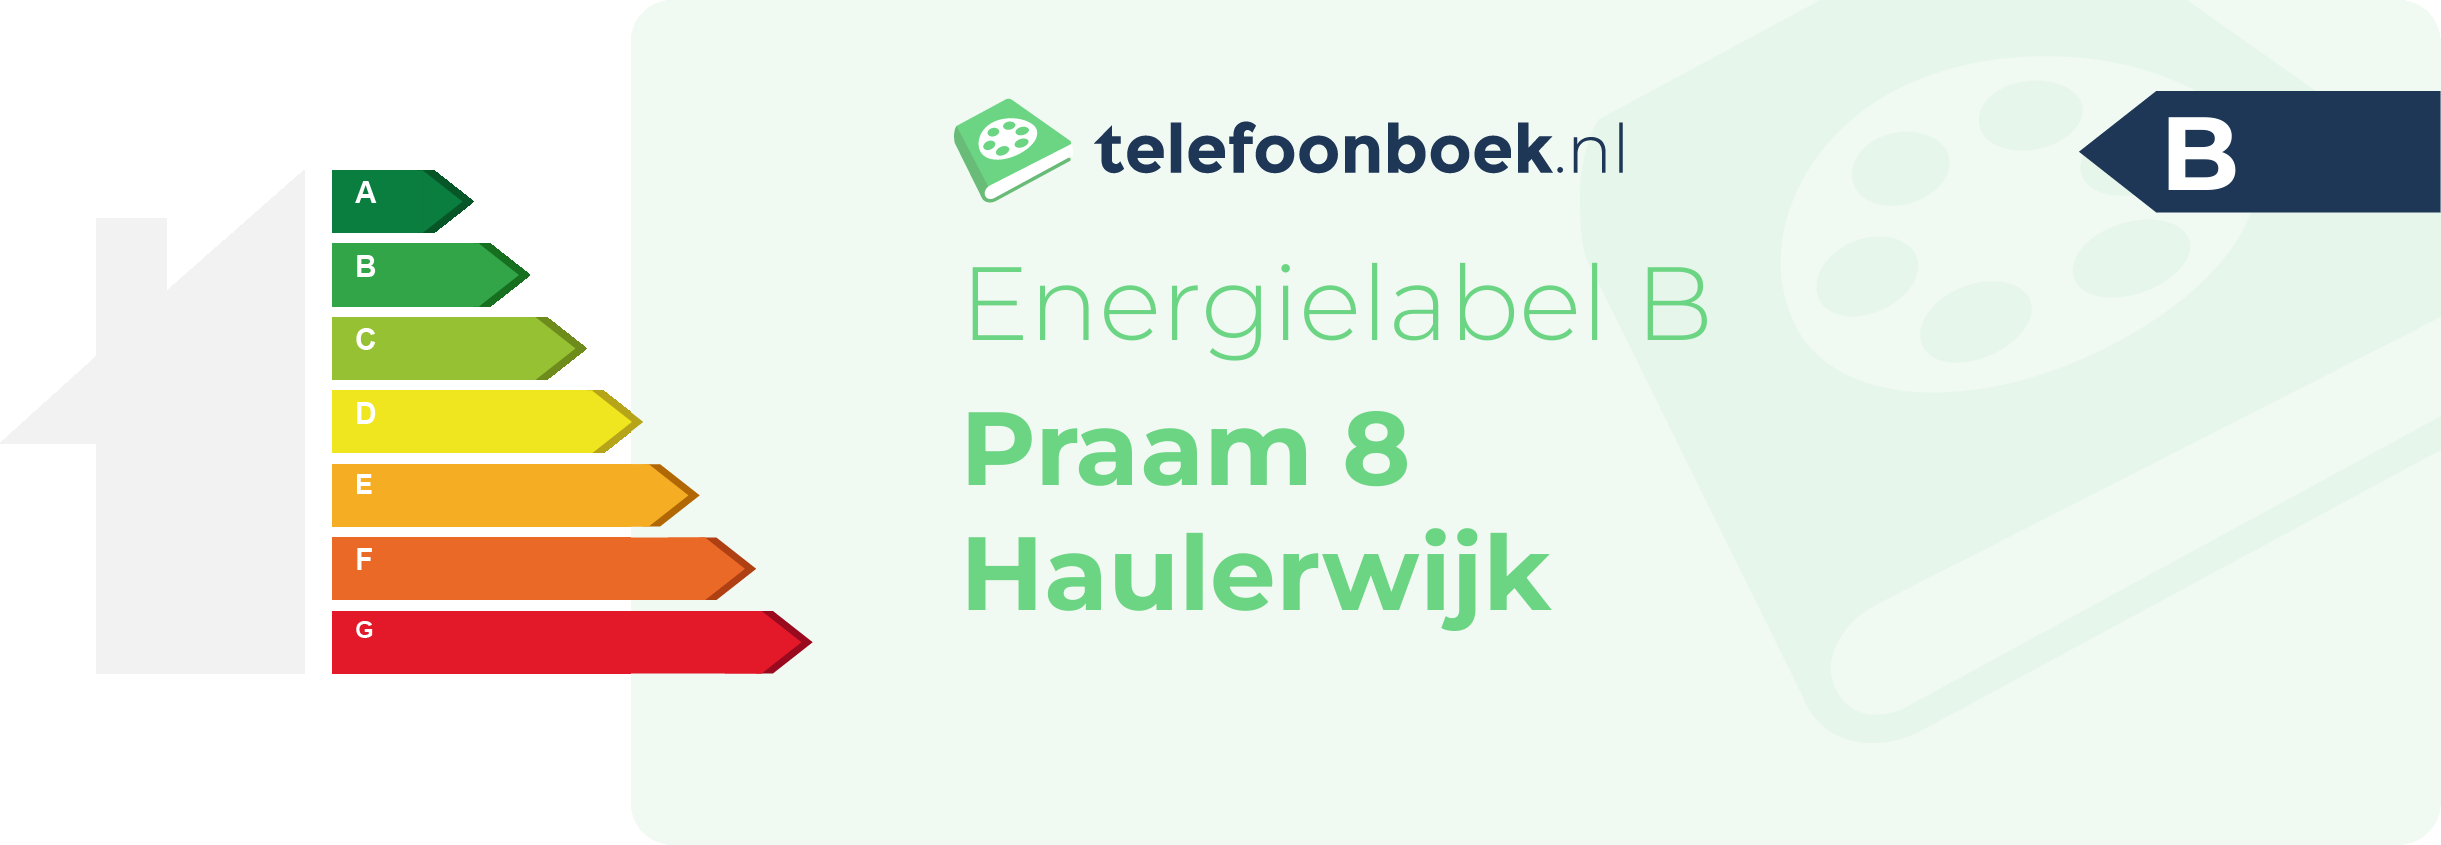 Energielabel Praam 8 Haulerwijk